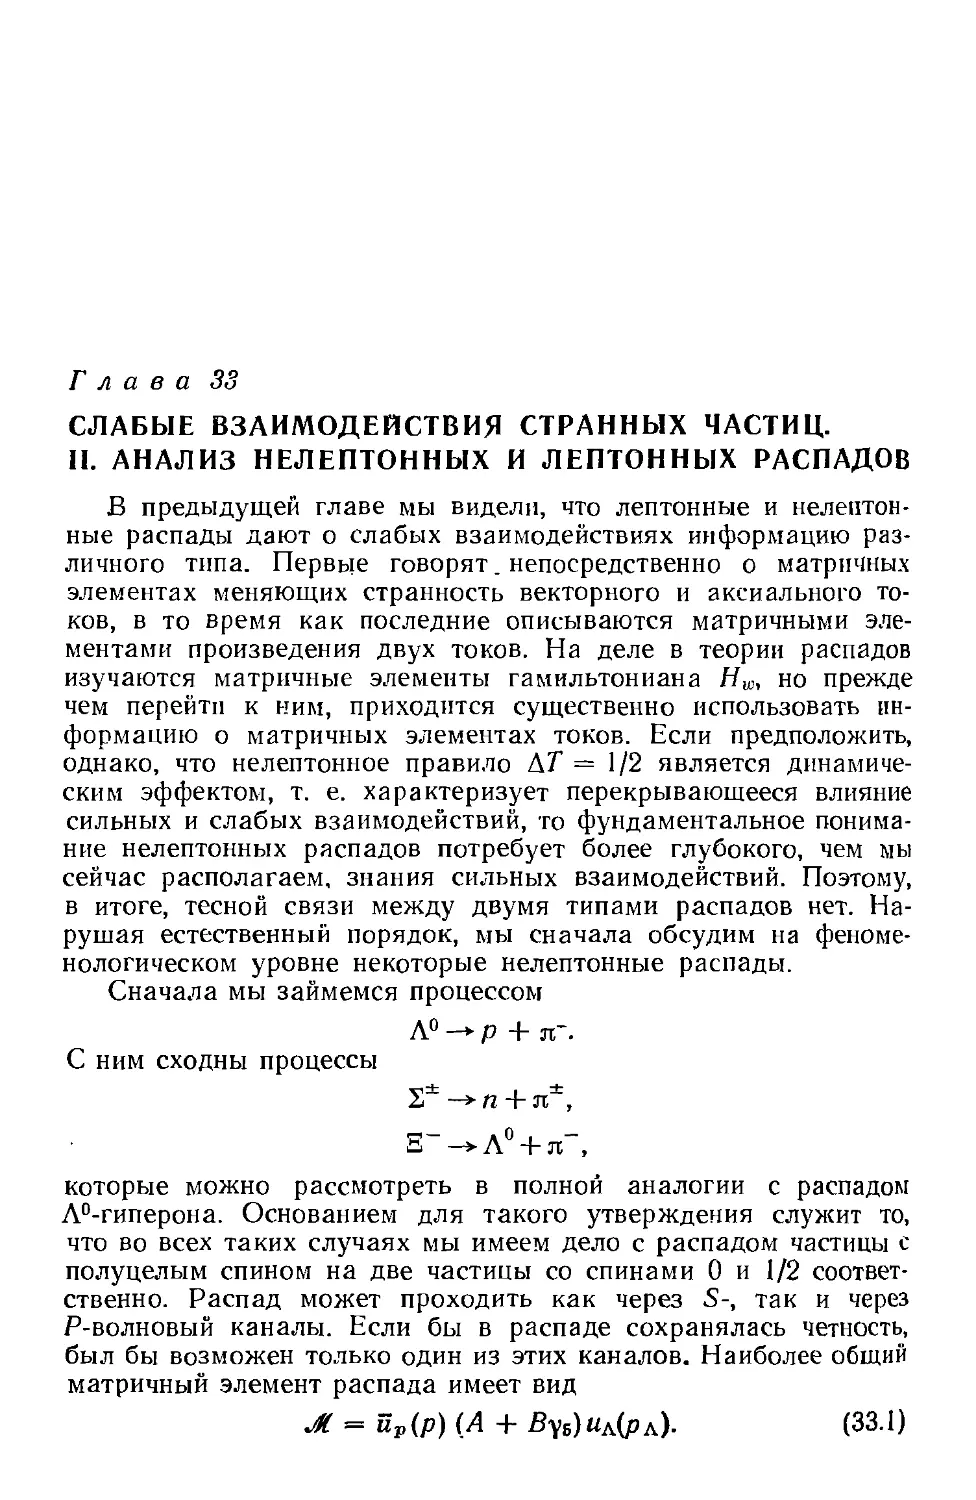 Глава 33. Слабые взаимодействия странных частиц. II. Анализ нелептонных и лептонных распадов